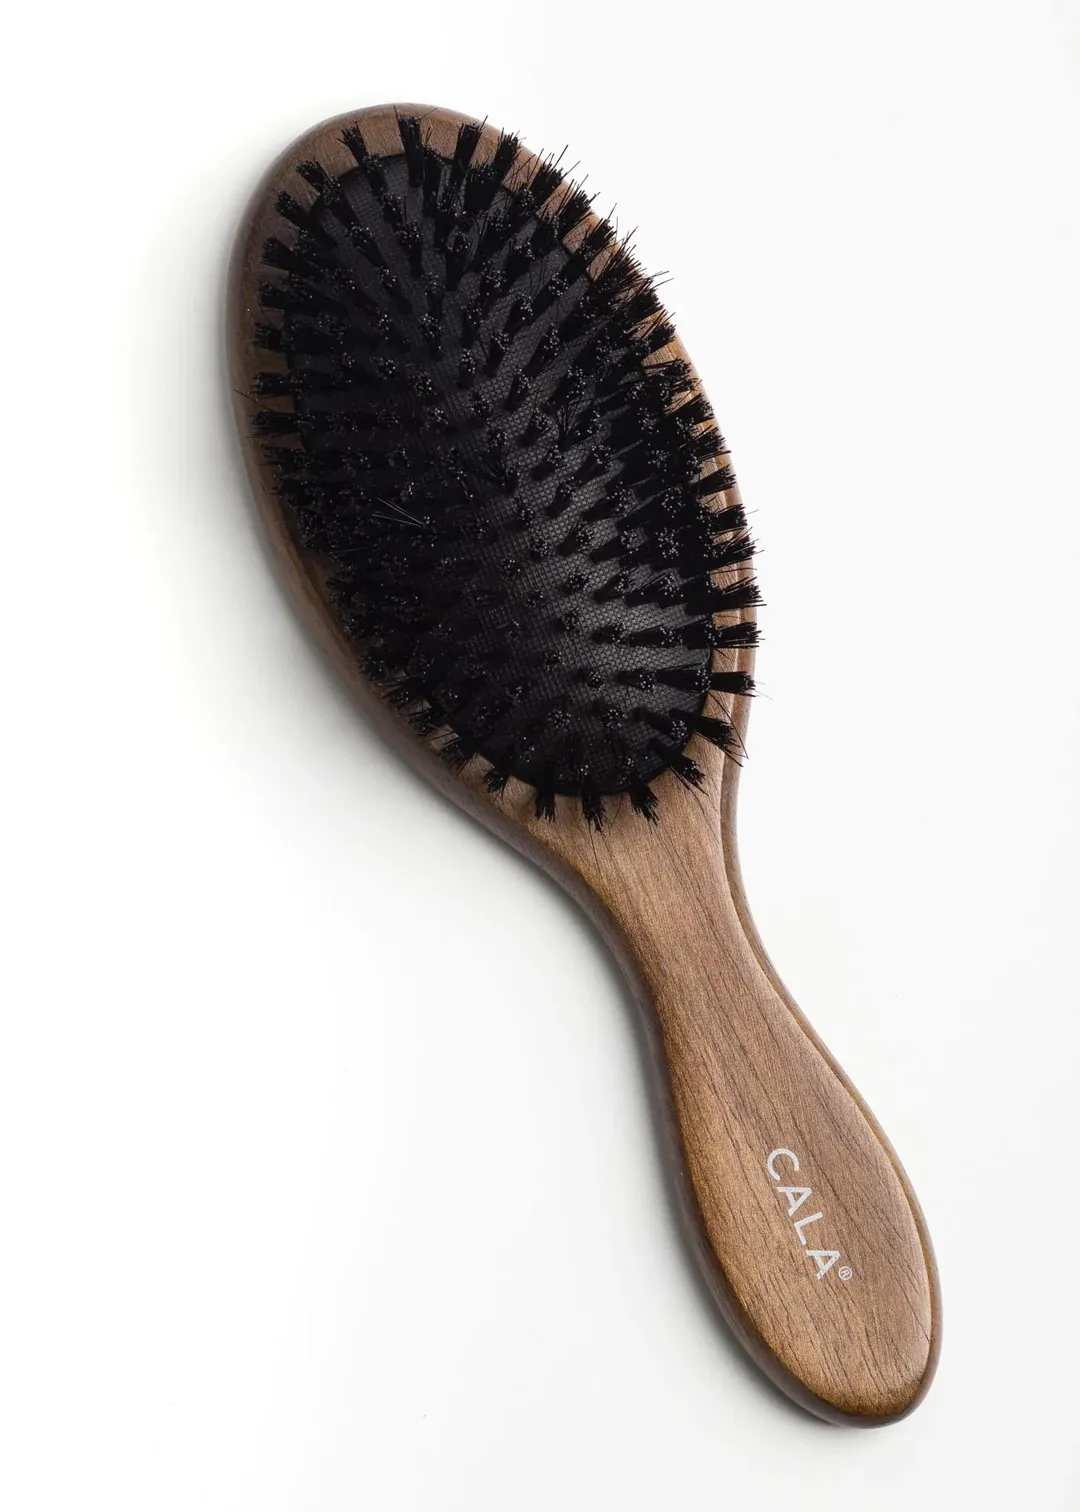 Cepillo De Pelo Hair Brush Cerdas De Jabalí De Bambú Oscuro 66122